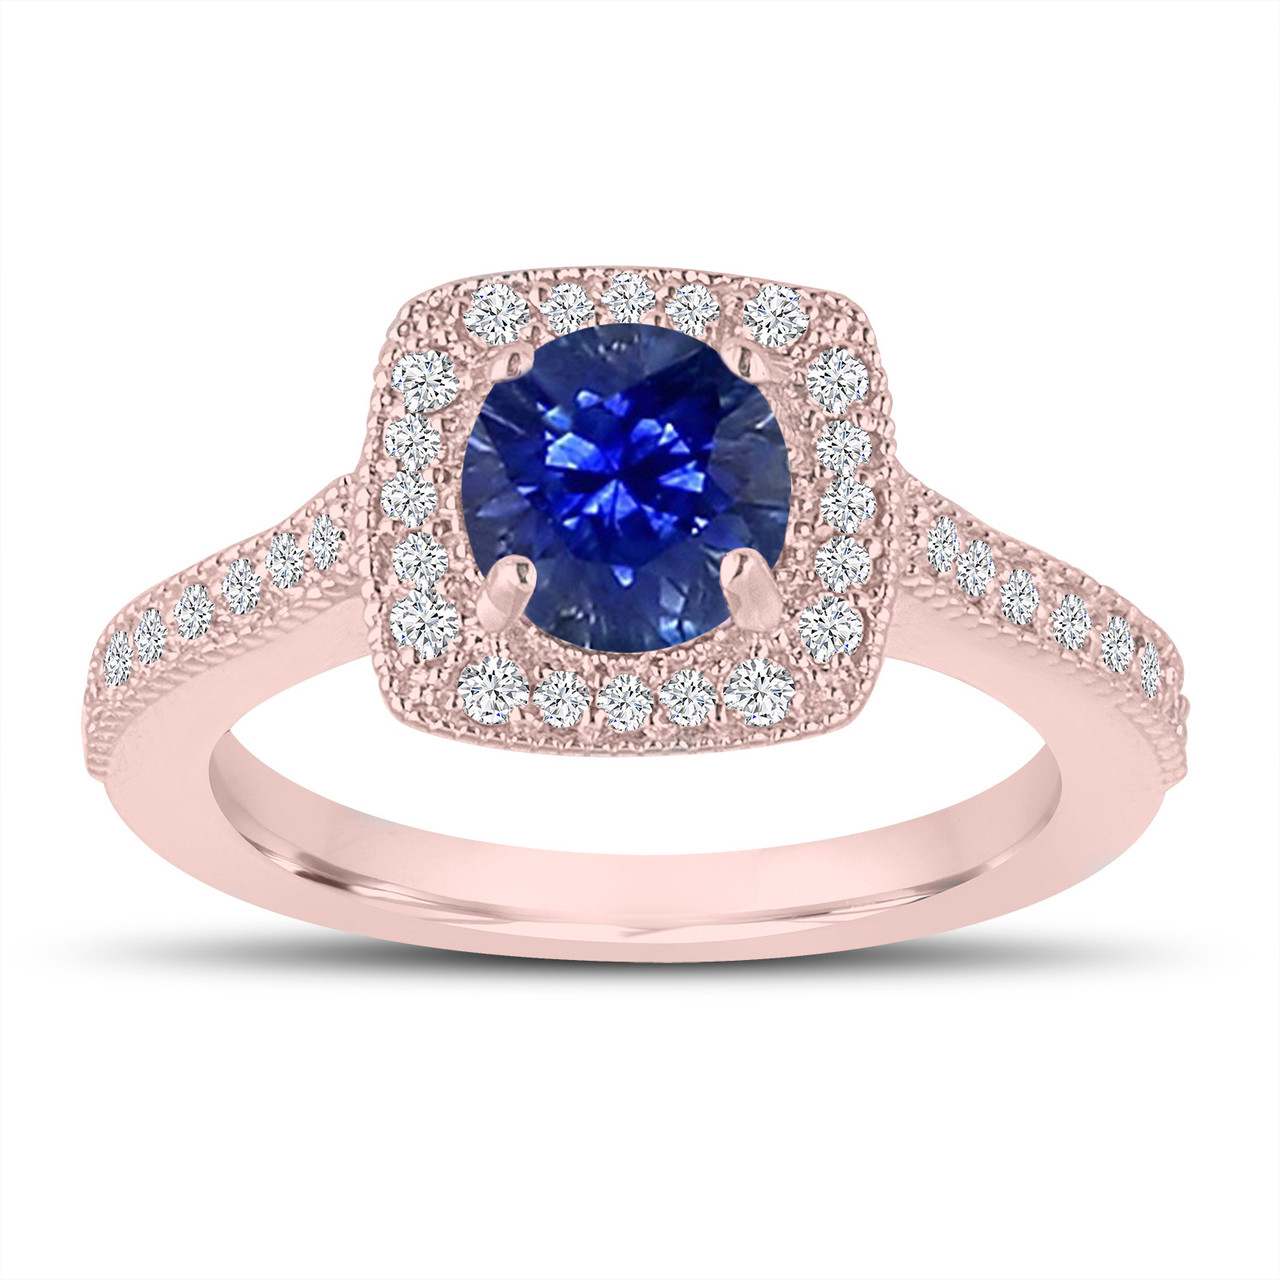  1  28 Carat  Sapphire Engagement  Ring  Wedding  Ring  14K Rose  